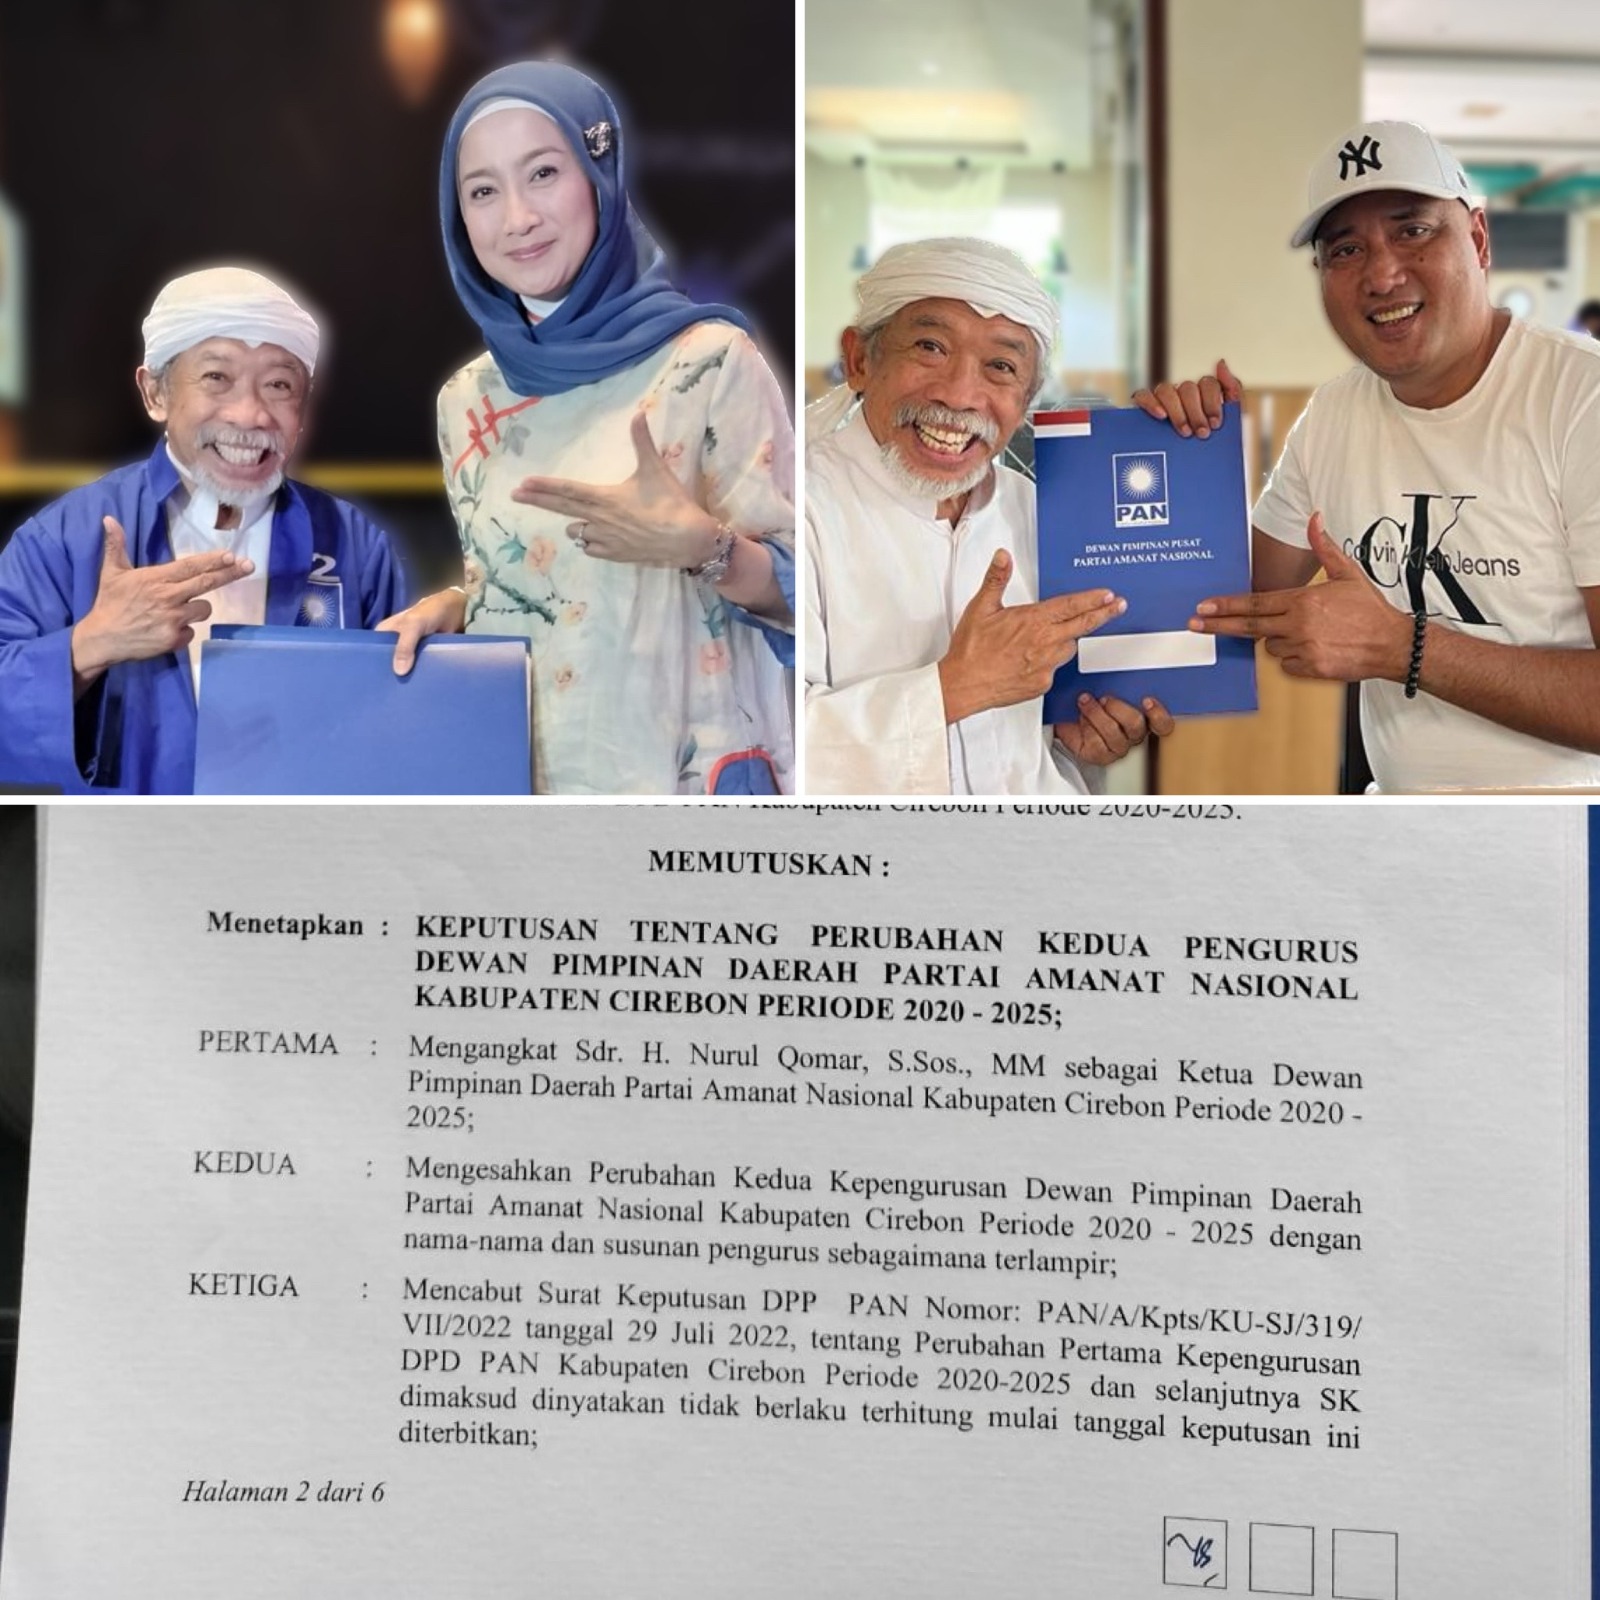 Intip Ketua DPD PAN Kabupaten Cirebon Pengganti Heru Subagia, Qomar dari Pelawak hingga Tersandung Kasus